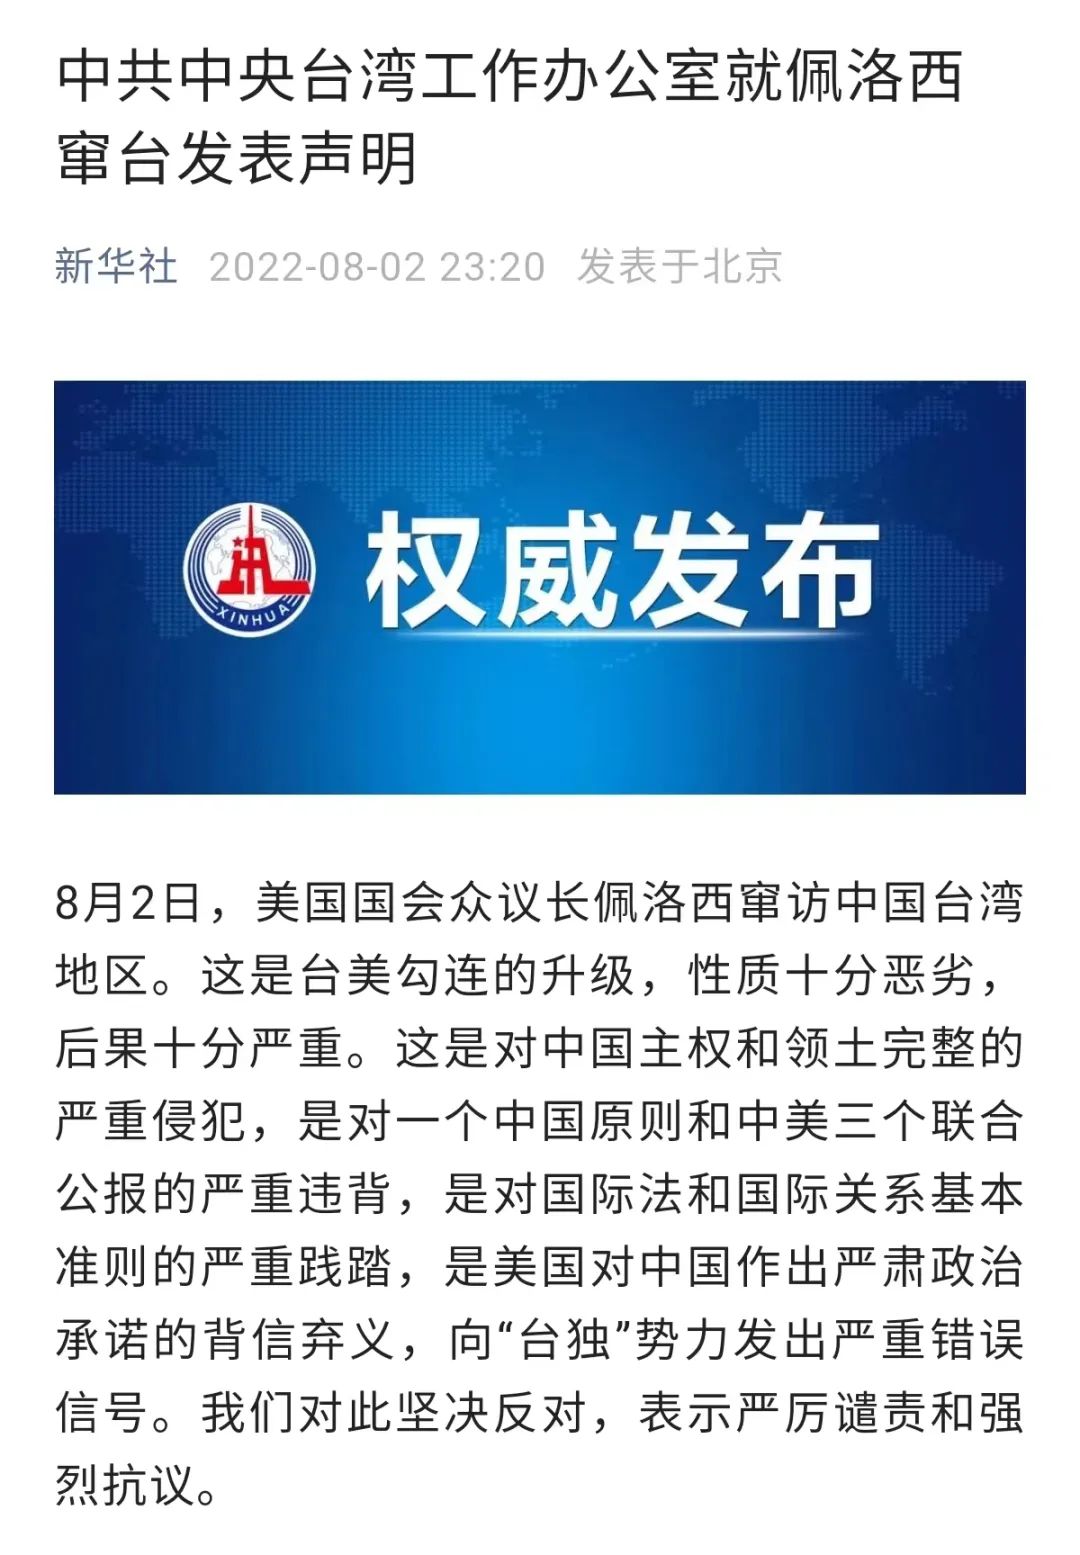 美国众议长佩洛西窜访中国台湾，外交部严厉谴责，国防部坚决反对，中央台办强烈抗议，解放军4日至7日军演。筹码集中股新鲜出炉（附股）